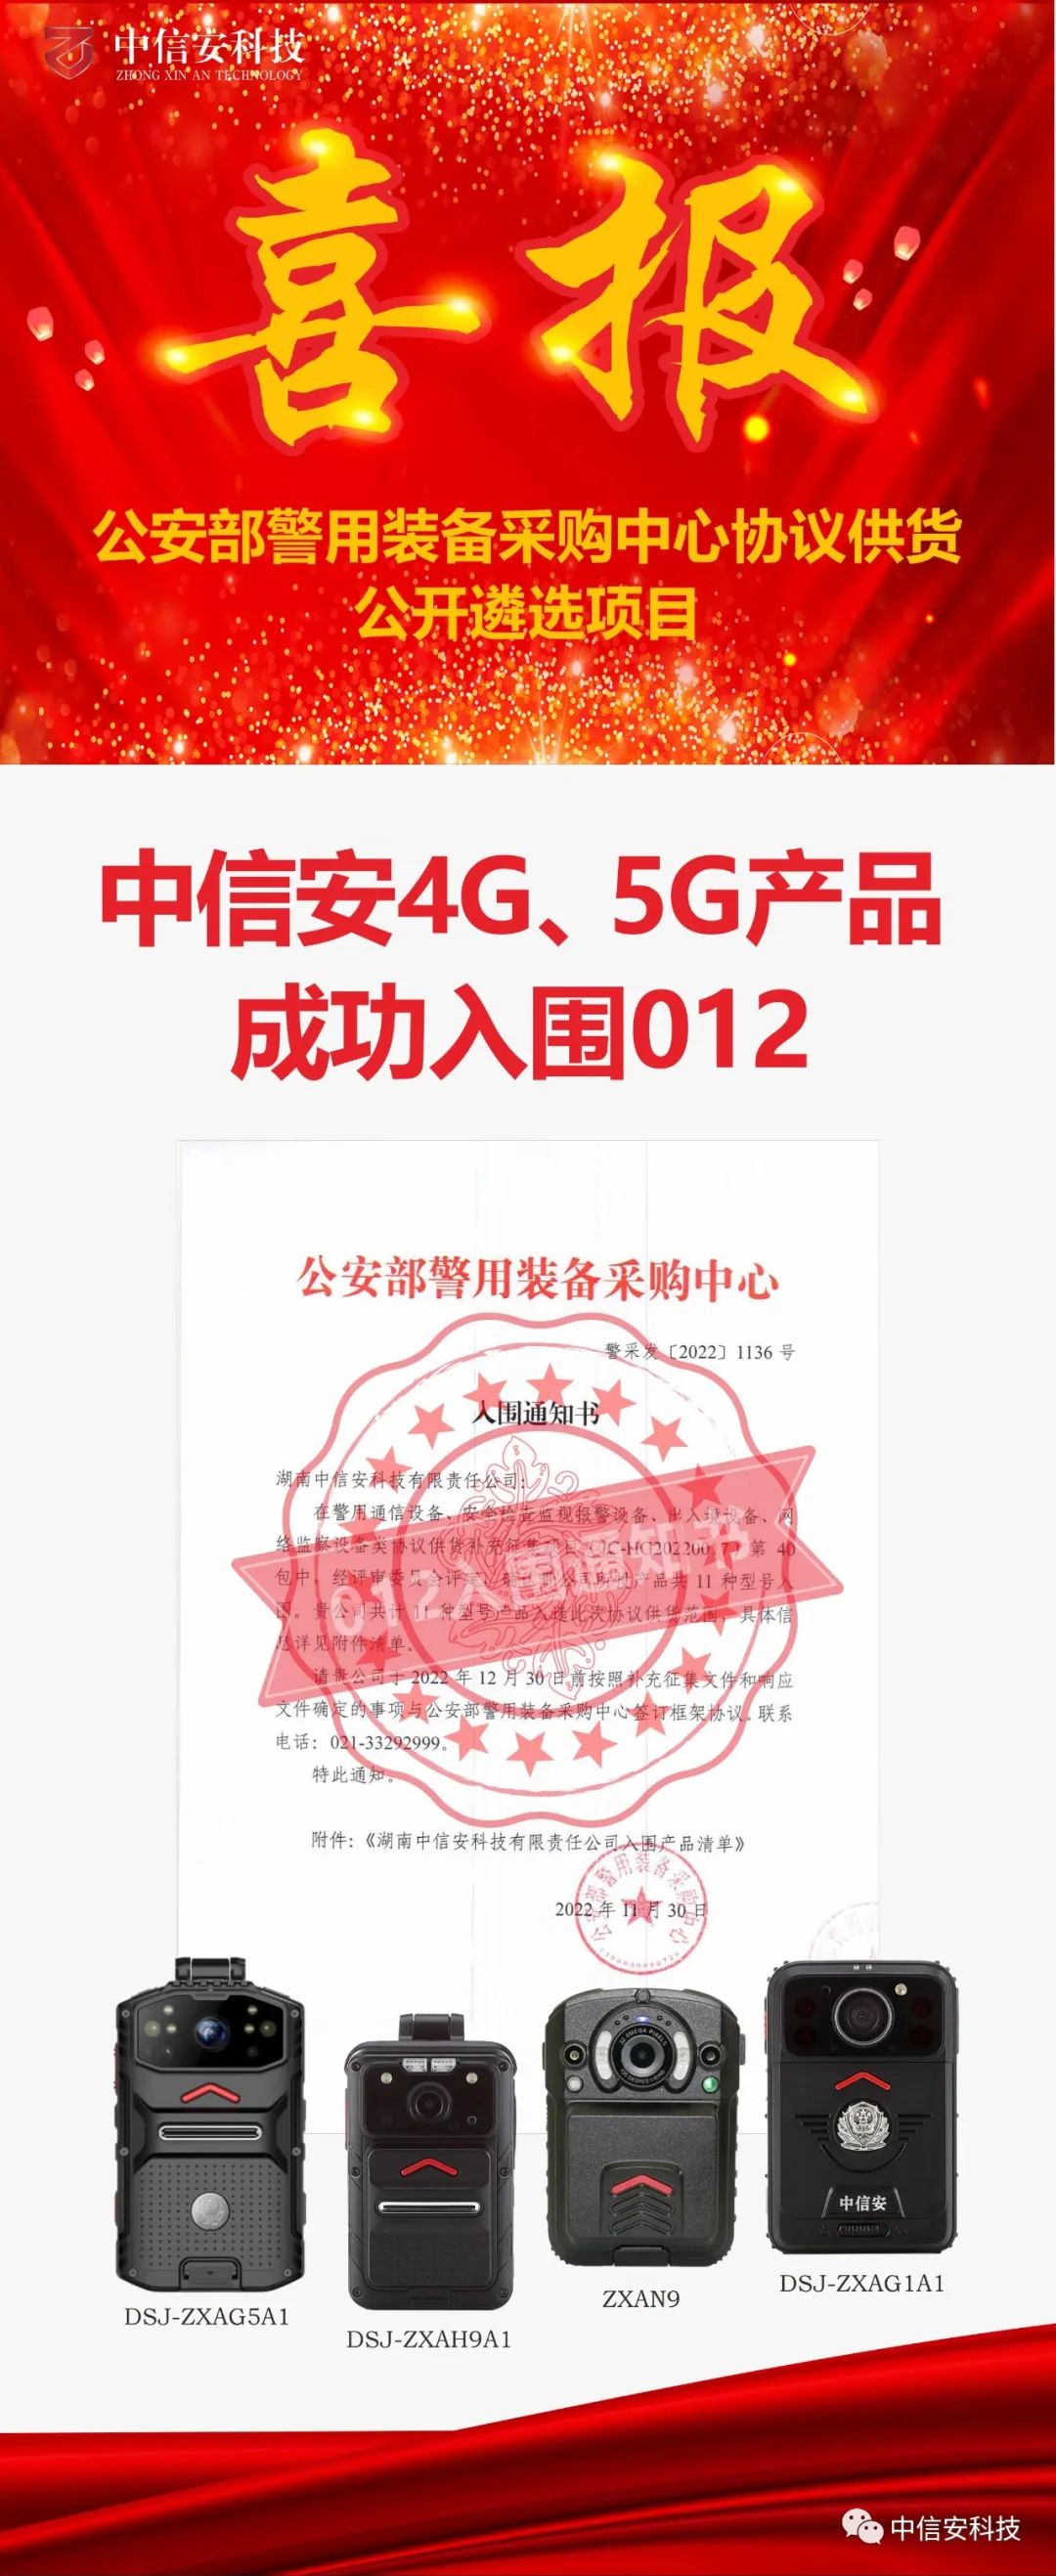 公告丨中信安4G、5G产品成功入围012